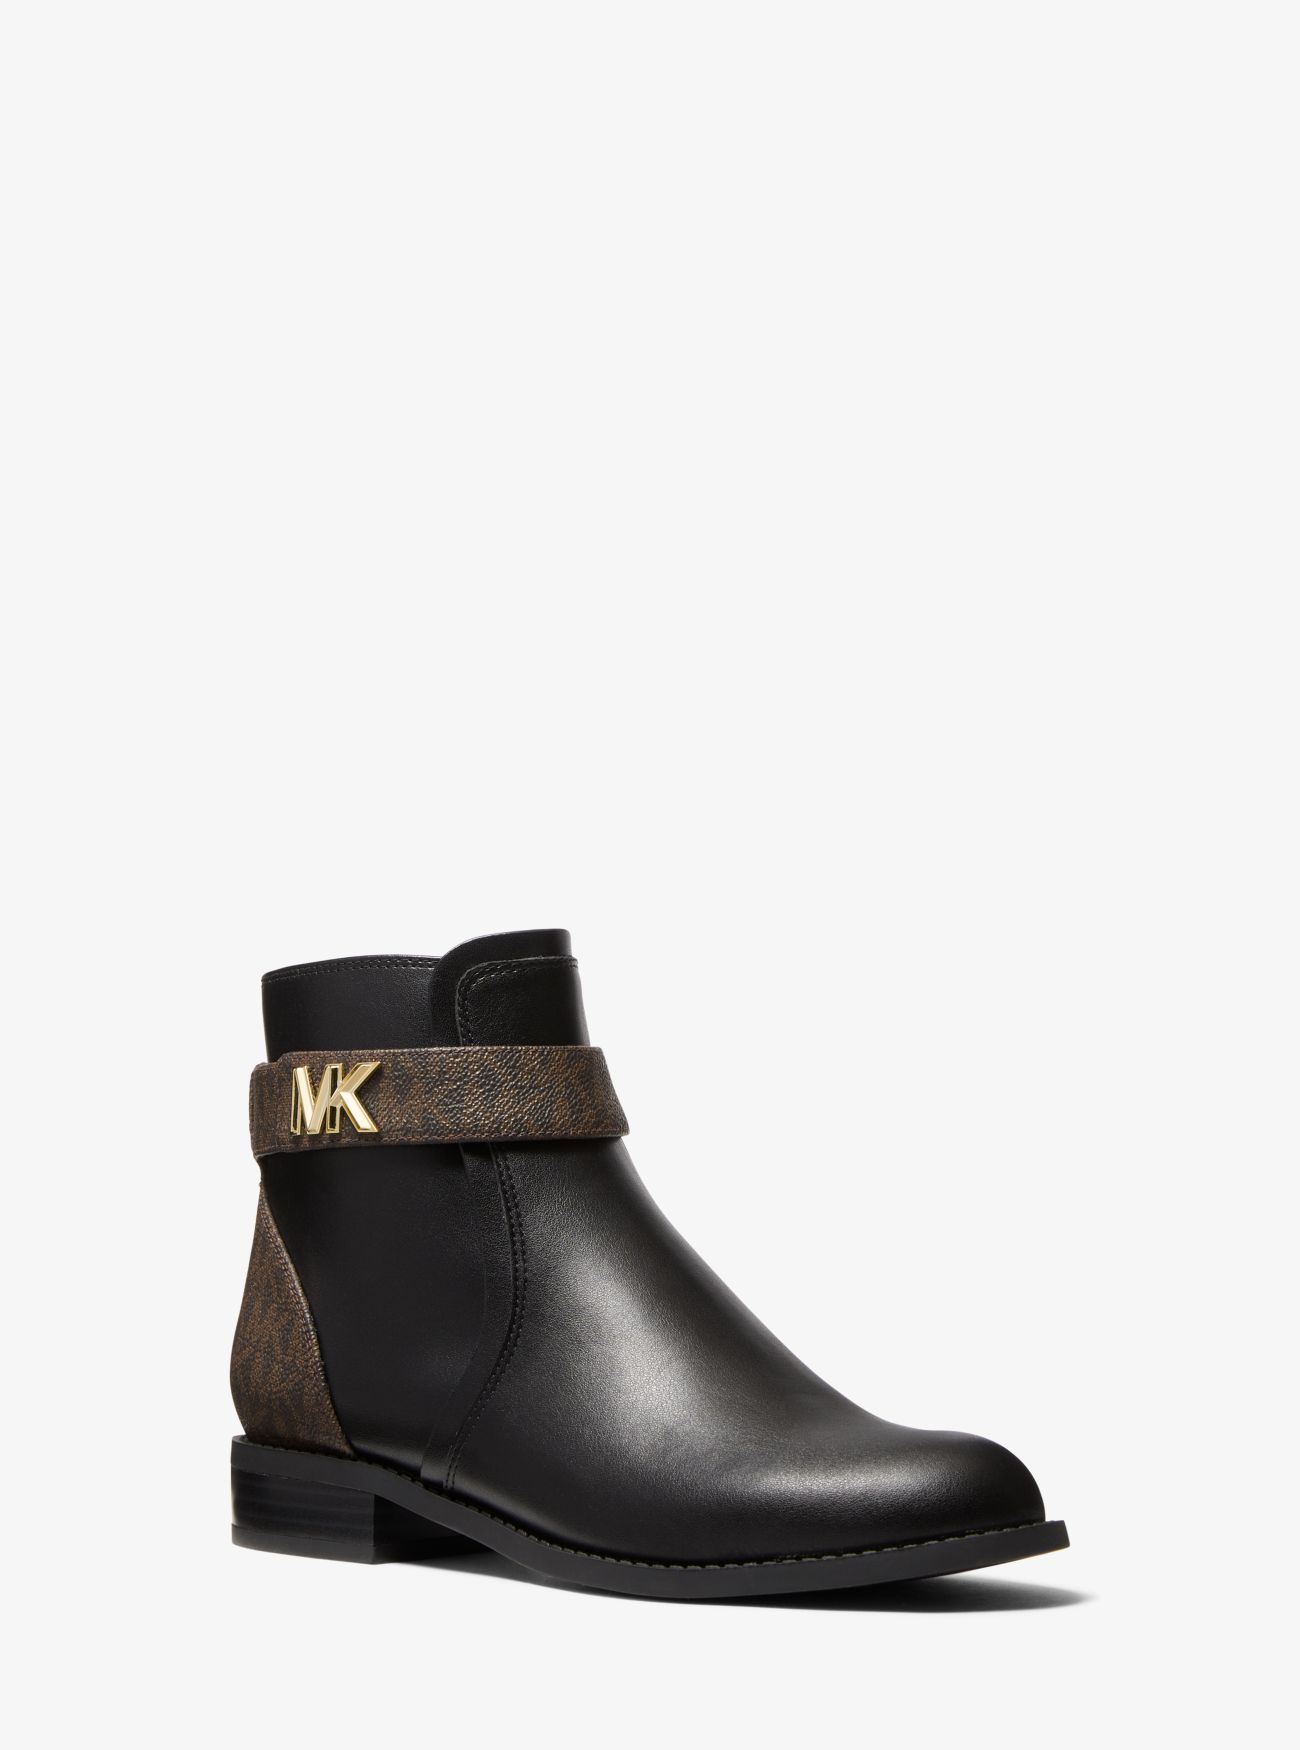 MK Jilly Logo Trim Ankle Boot - Blk/brown - Michael Kors